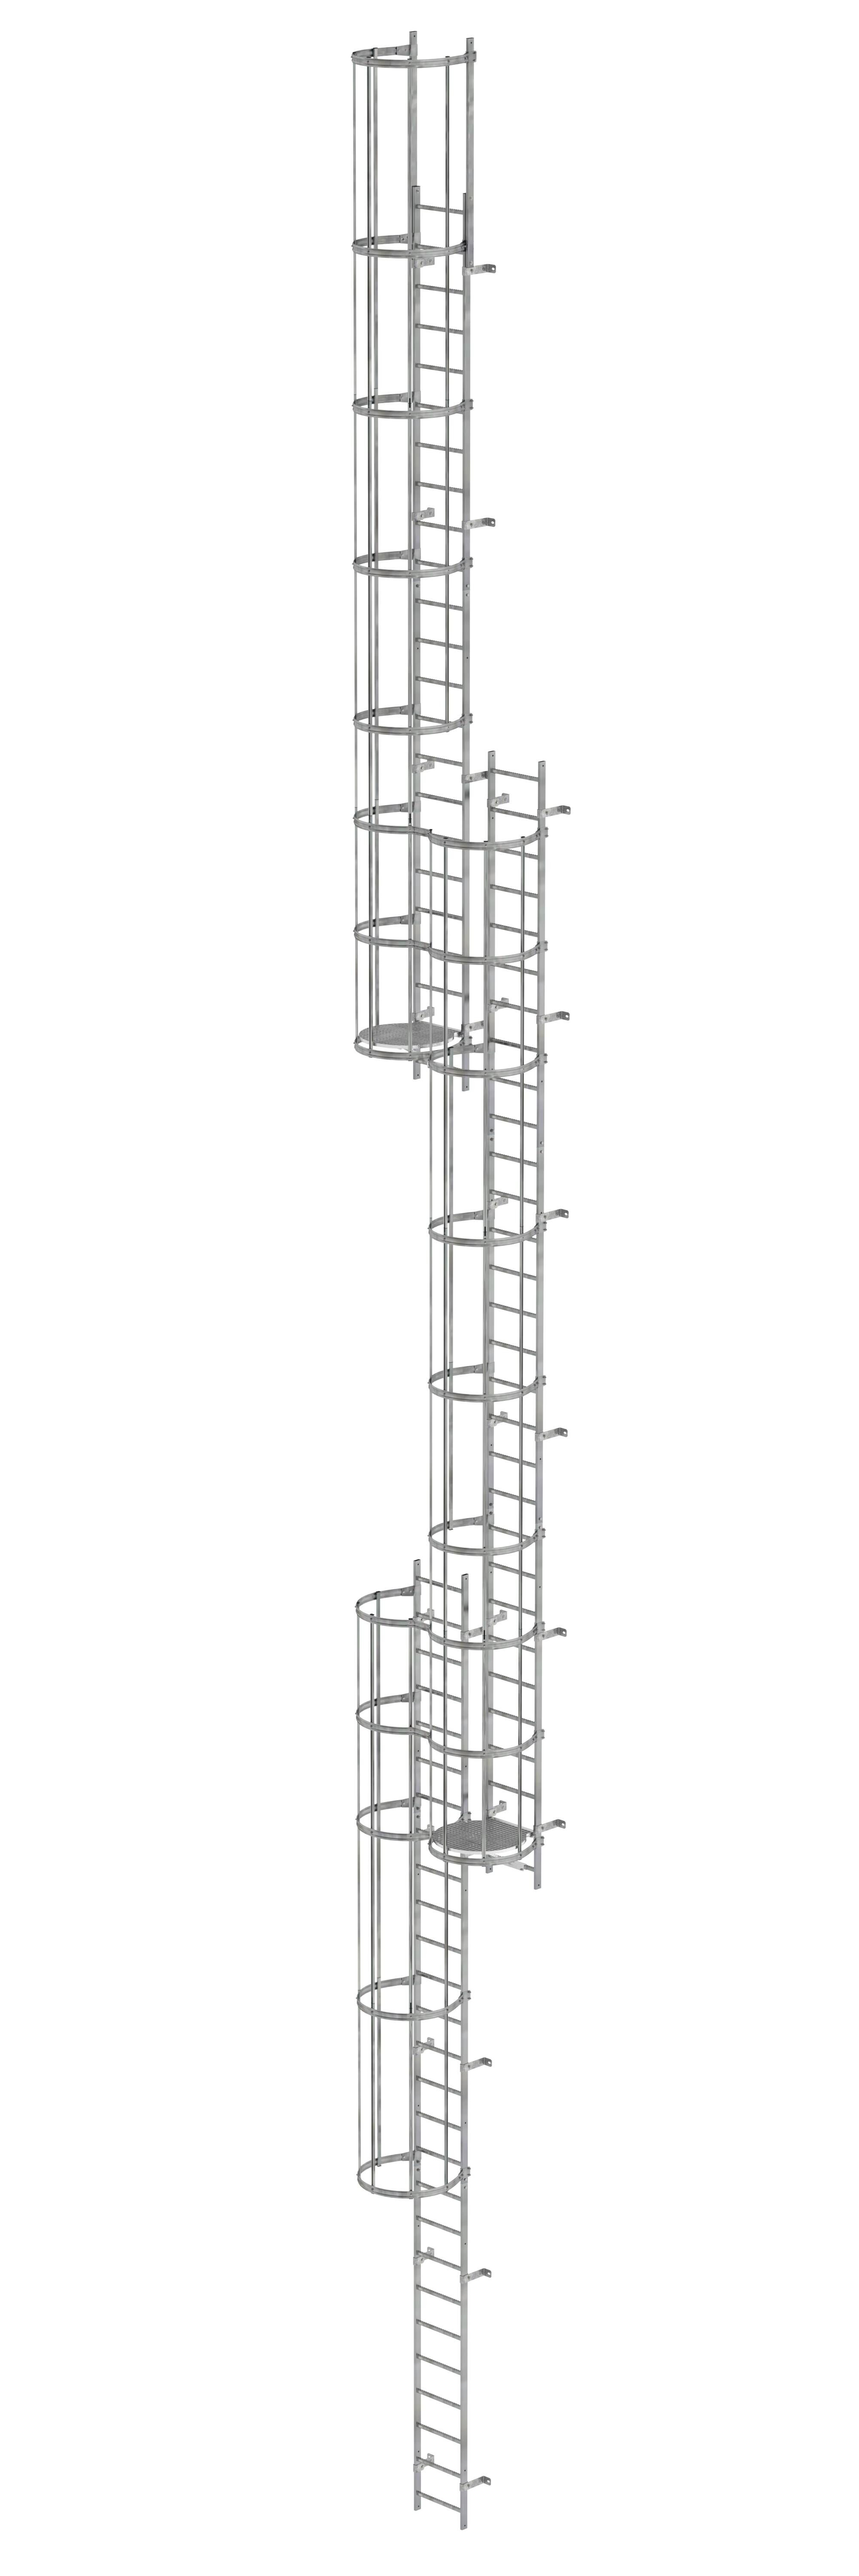 Mehrzügige Steigleiter mit Rückenschutz (Notleiter) Stahl verzinkt 18,84m